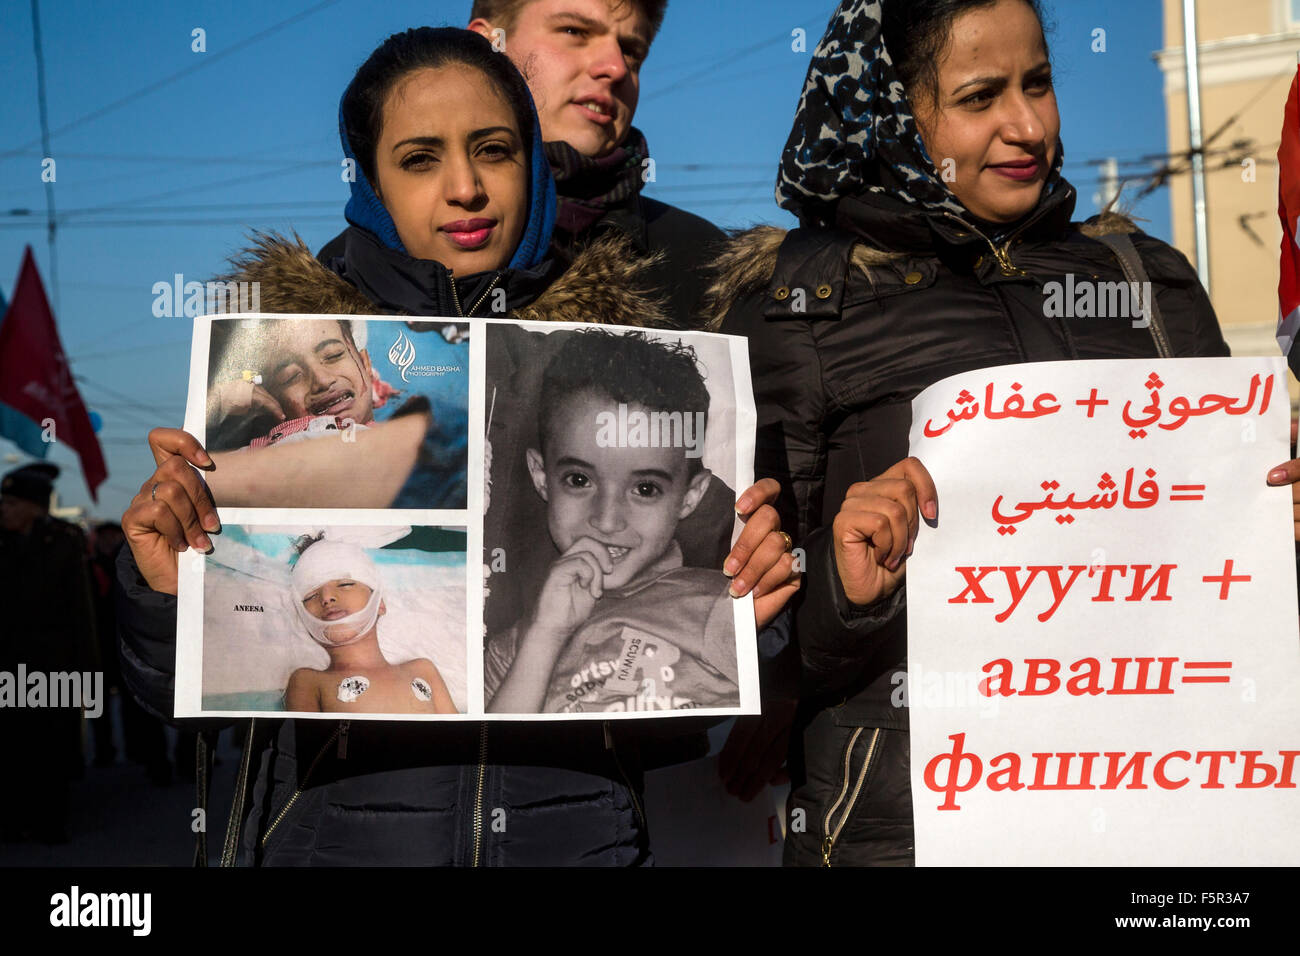 Mosca, Russia. 07 Nov, 2015. Cittadini yemeniti proteste contro la guerra nel proprio paese nel corso del mese di marzo di comunisti russi sulla via Petrovka a Mosca, Russia Foto Stock